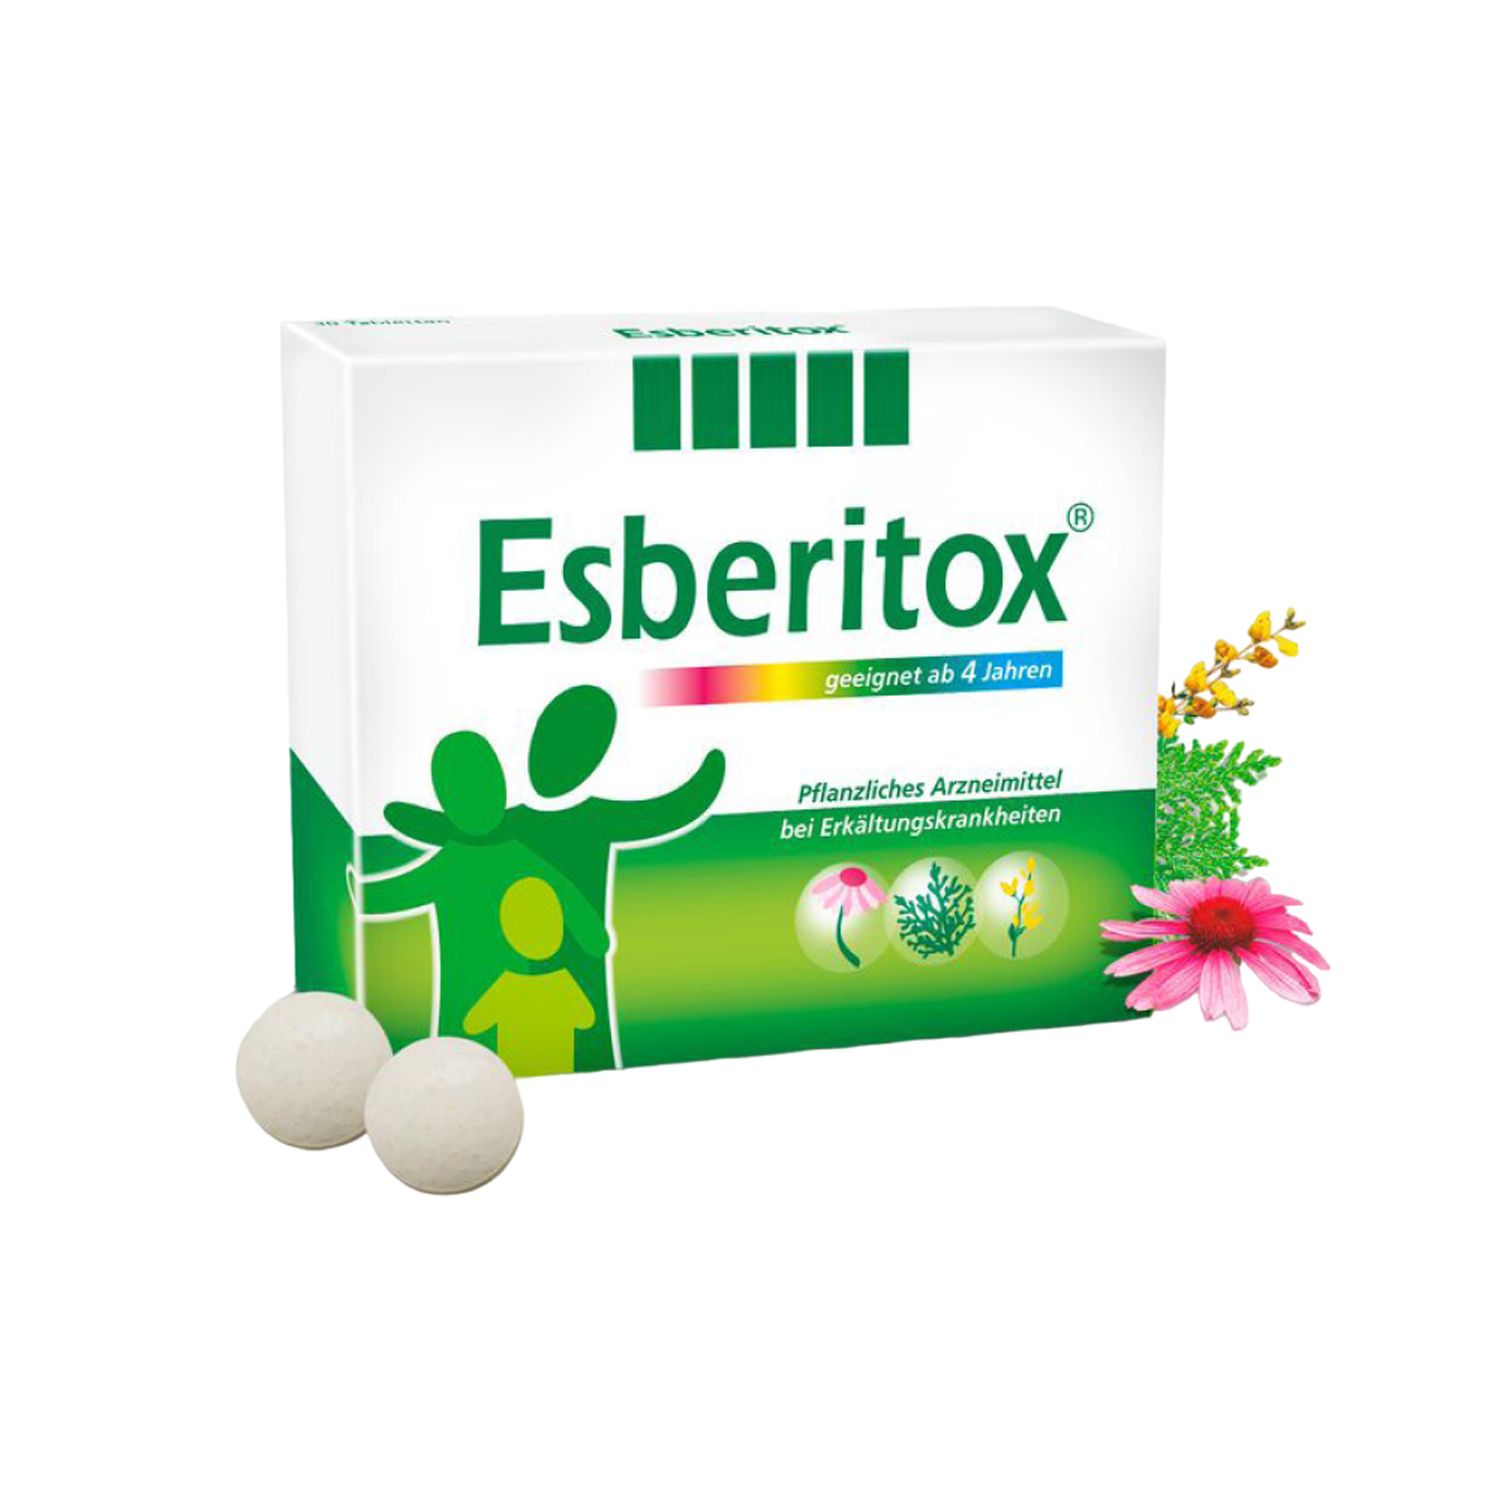 Esberitox Tabletten bei Erkältungskrankheiten